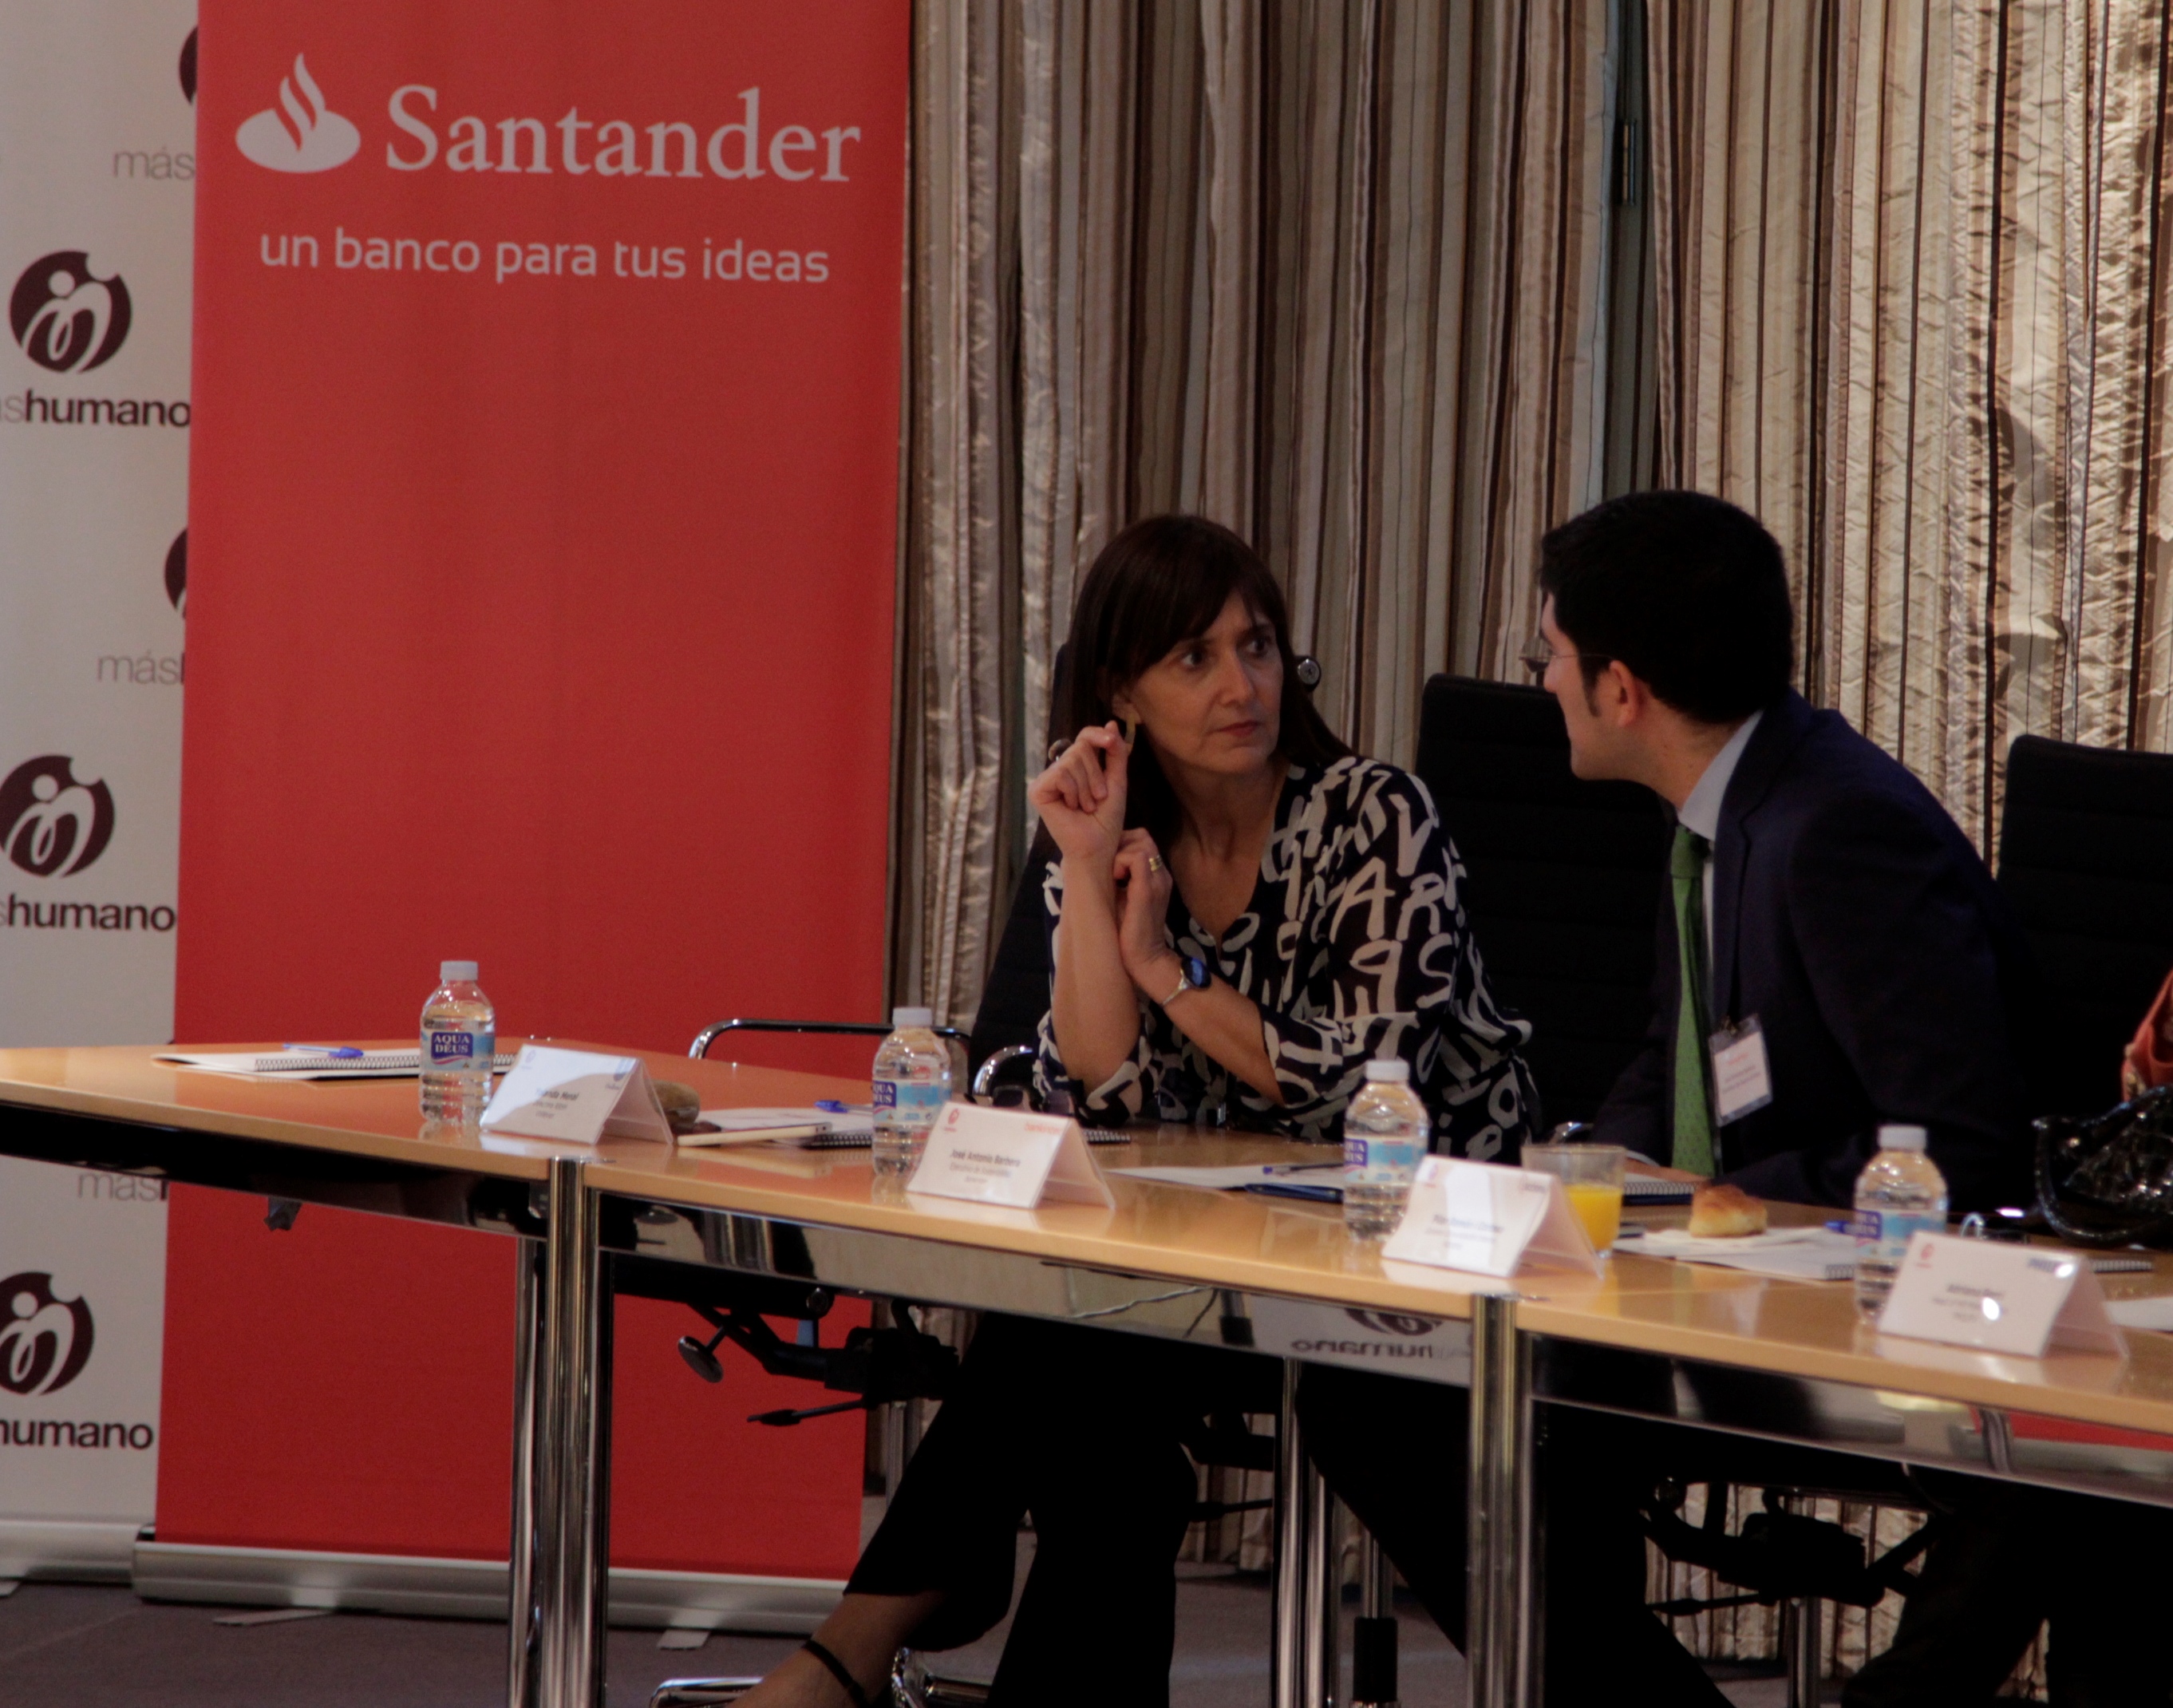 Mashumano En Banco Santander 3